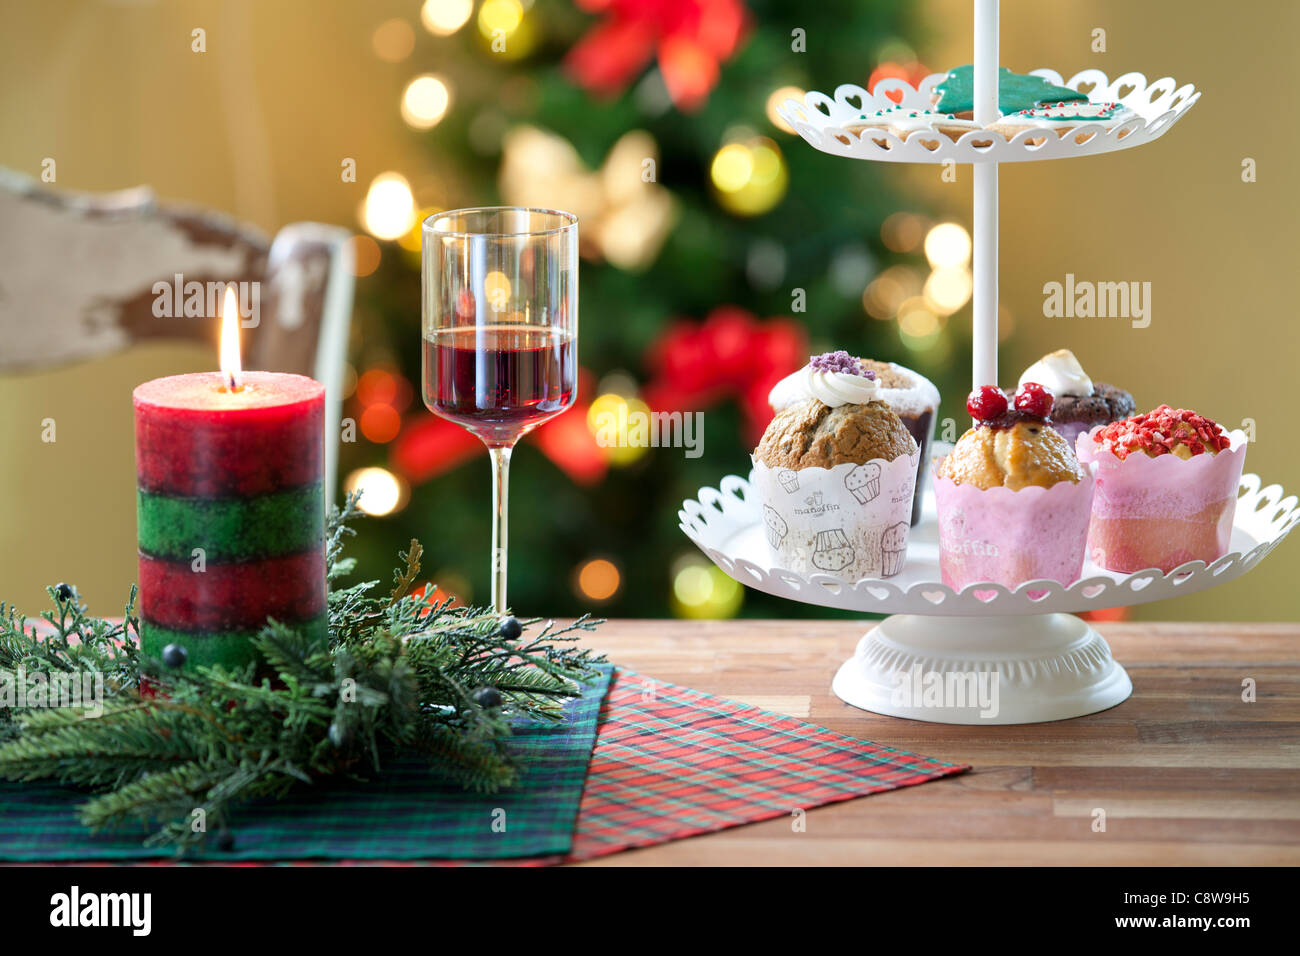 Natale decorativo candela, Wingless e Cup Cake Foto Stock